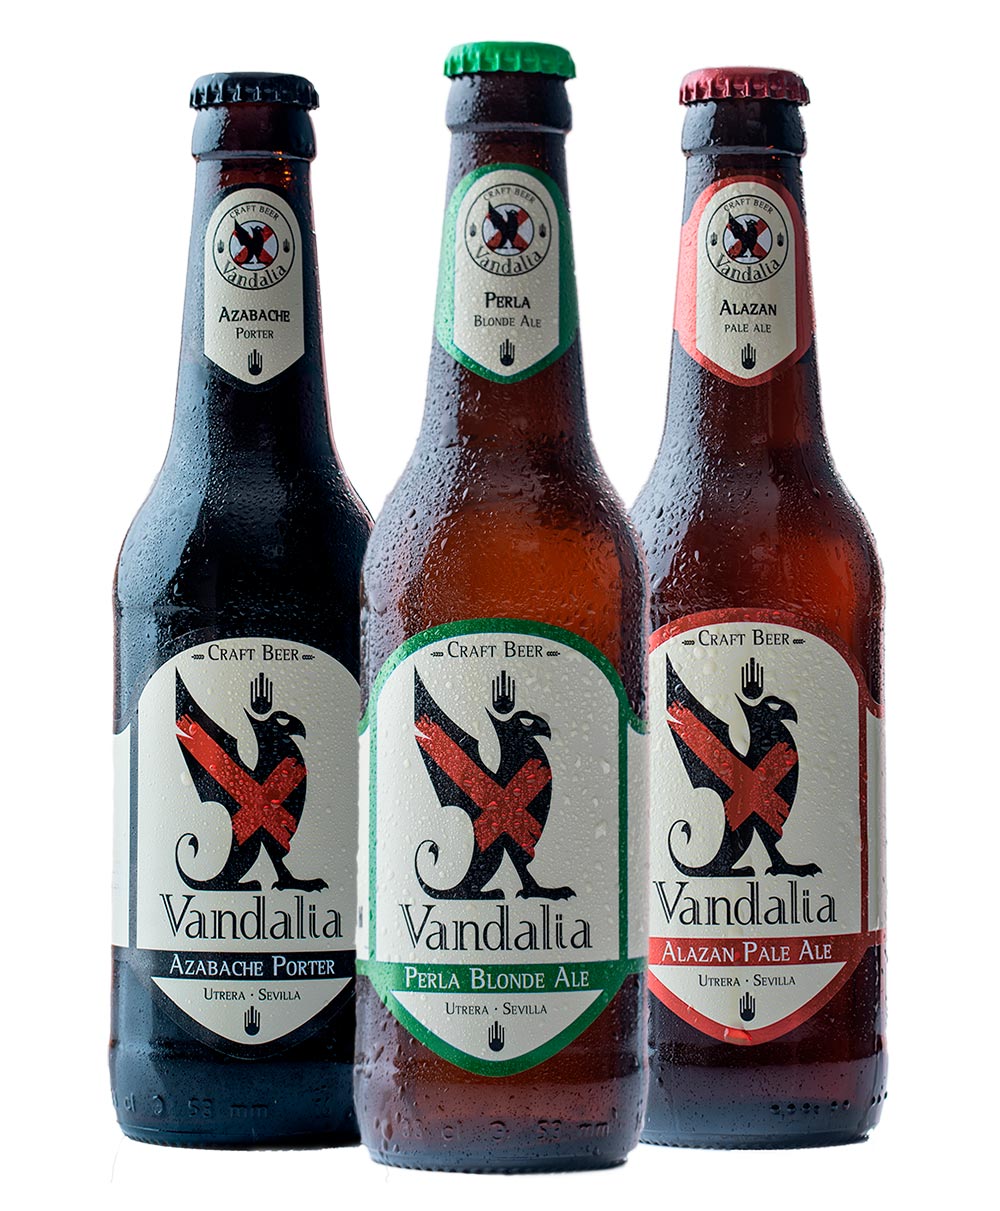 Cervezas Artesanas de Vandalia